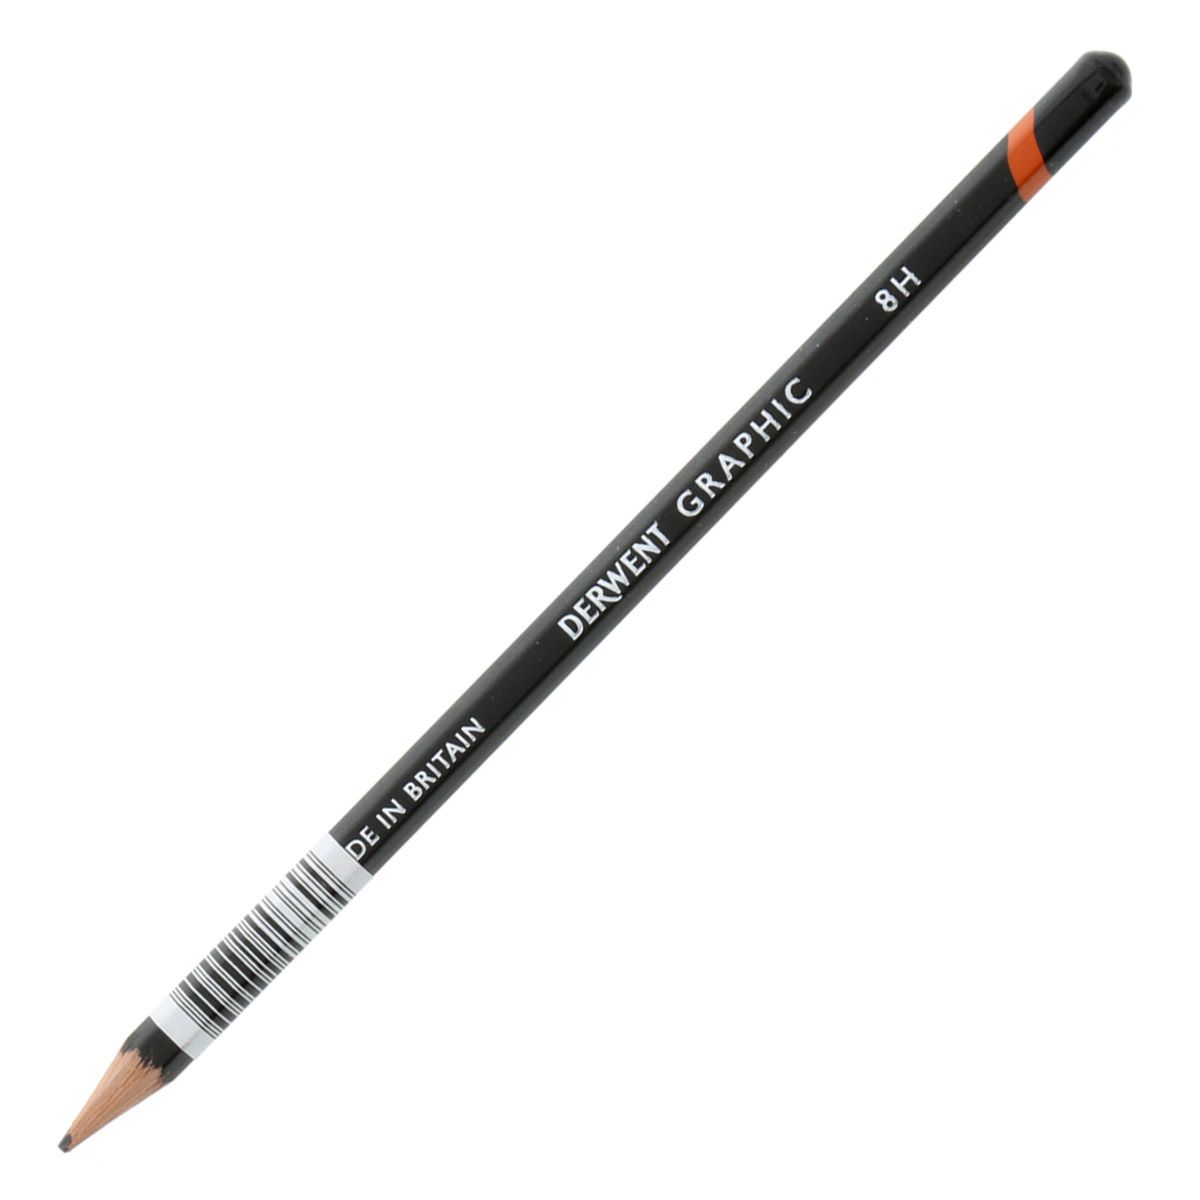 Derwent Graphic Pencil - 8H